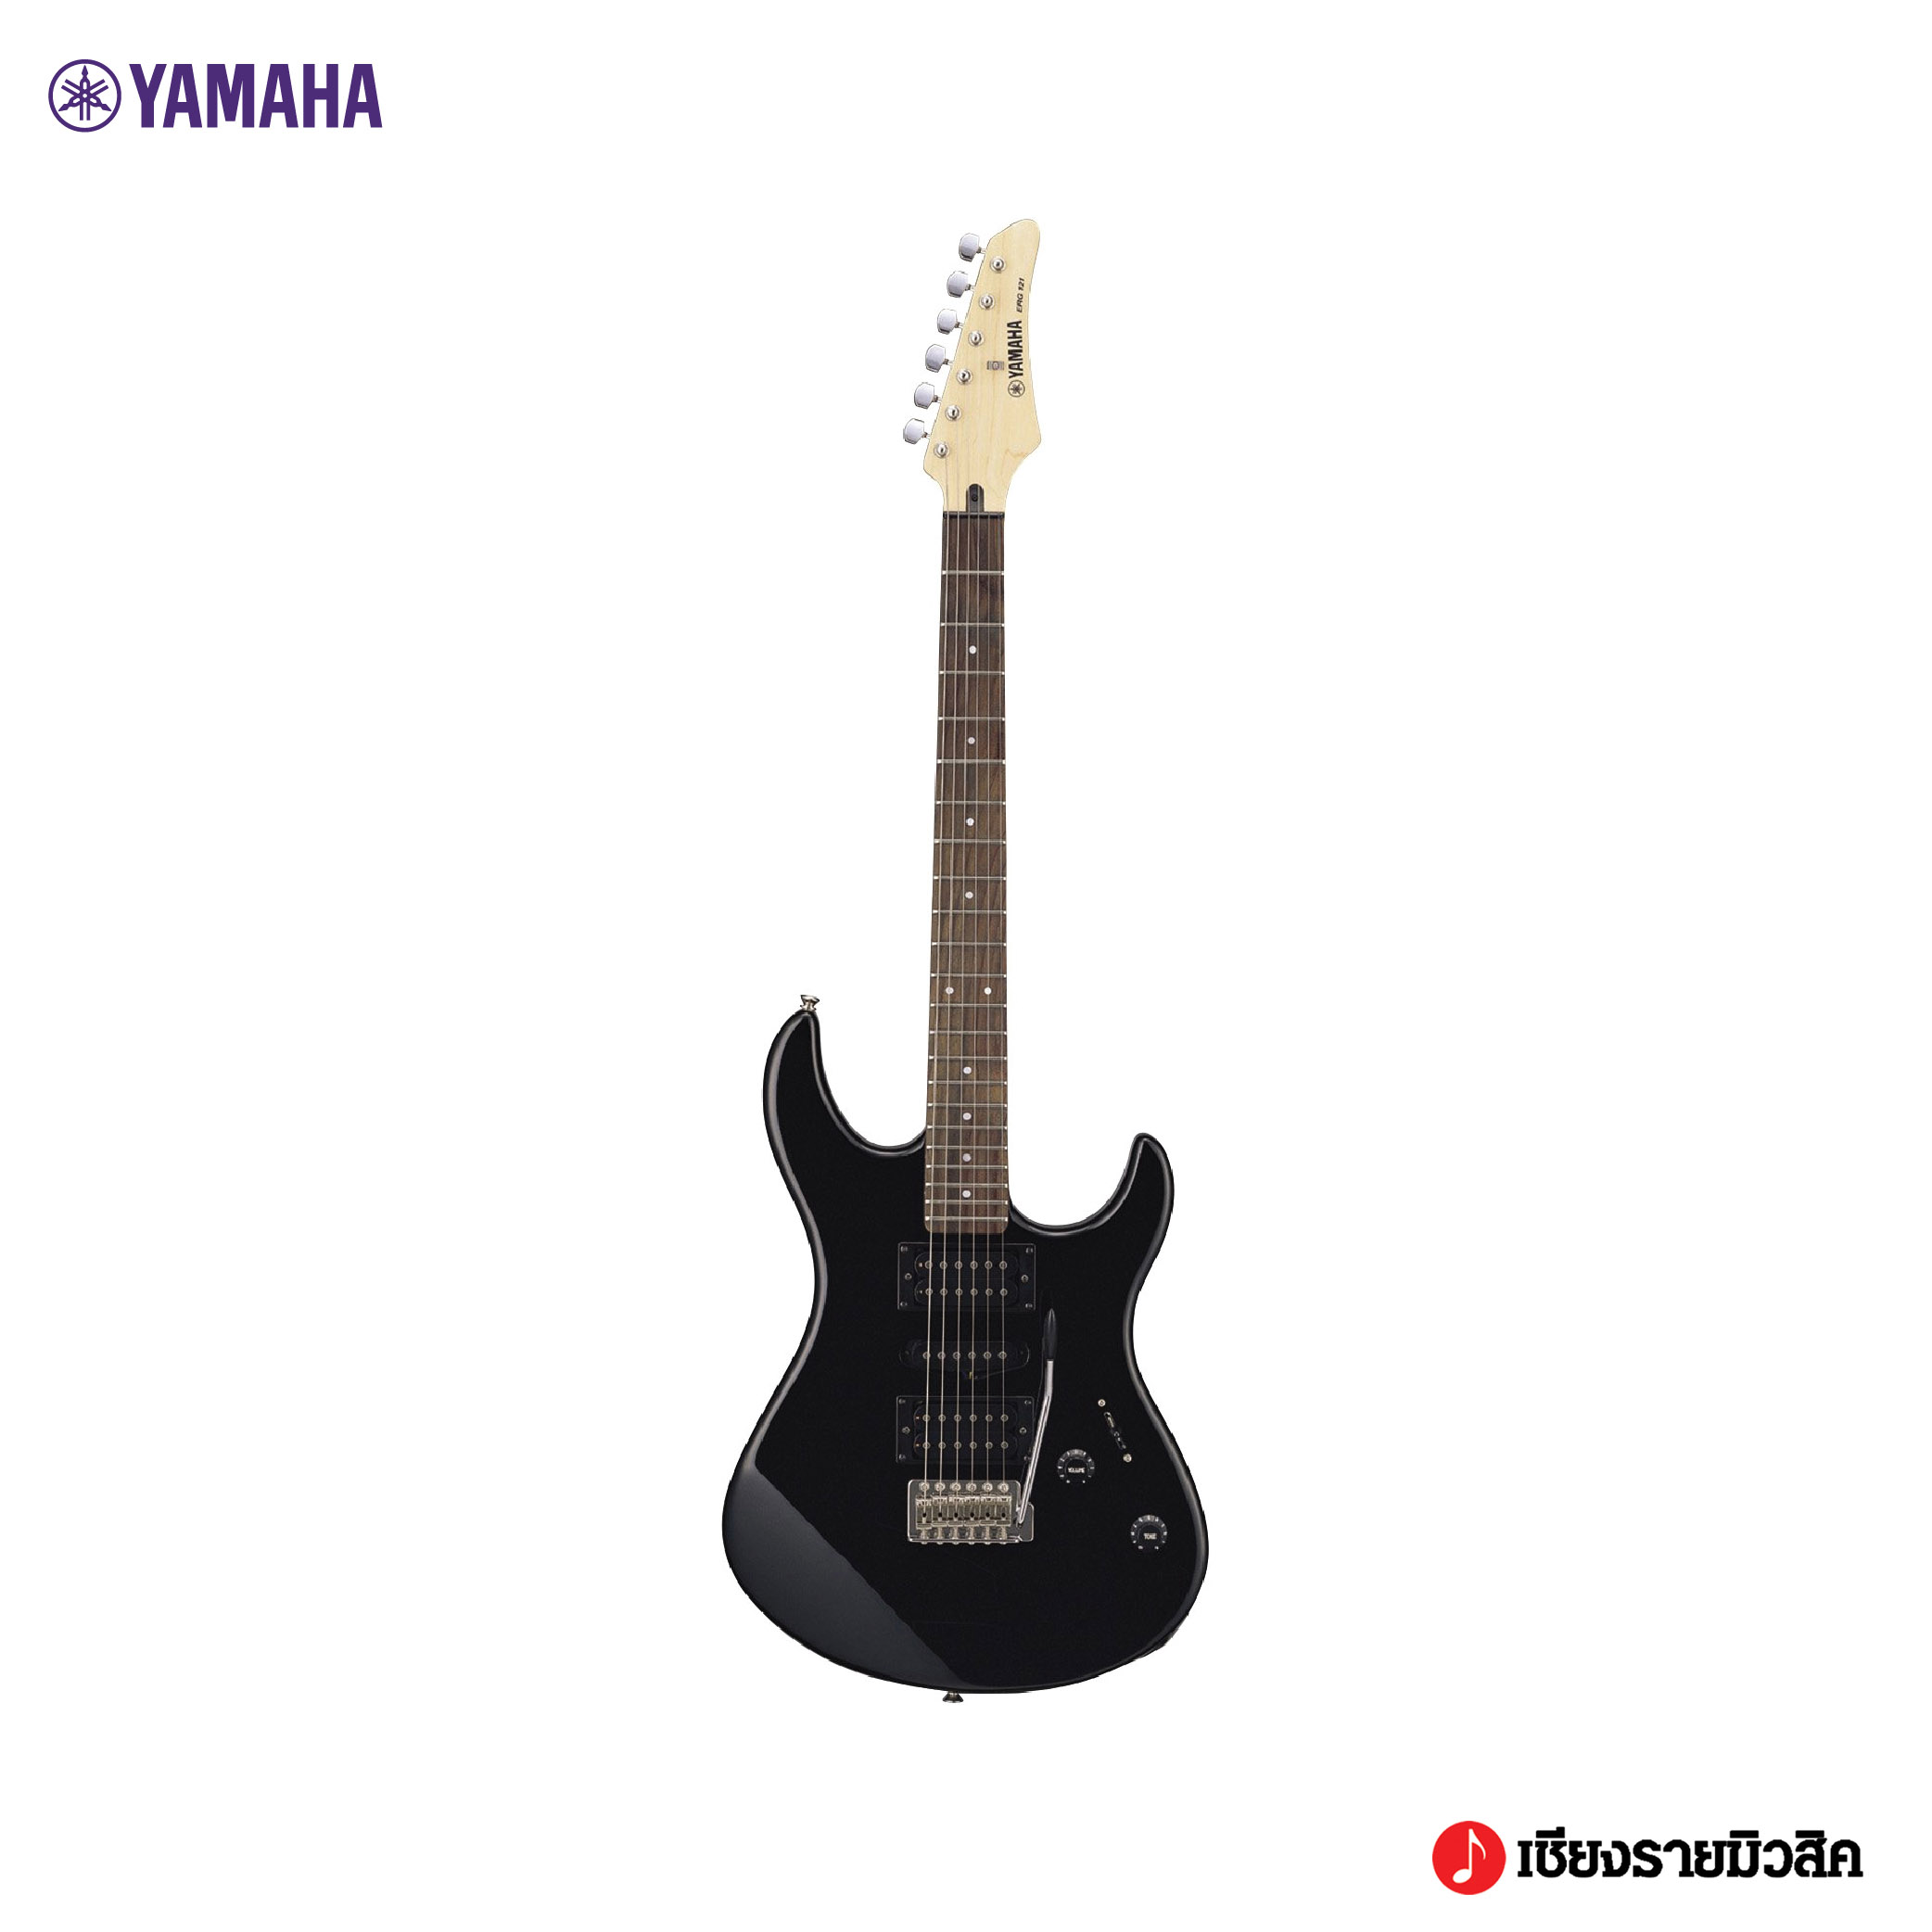 YAMAHA ERG121U Electric Guitar กีตาร์ไฟฟ้ายามาฮ่า รุ่น ERG121U  (Included Guitar Bag พร้อมกระเป๋ากีตาร์ภายในกล่อง)